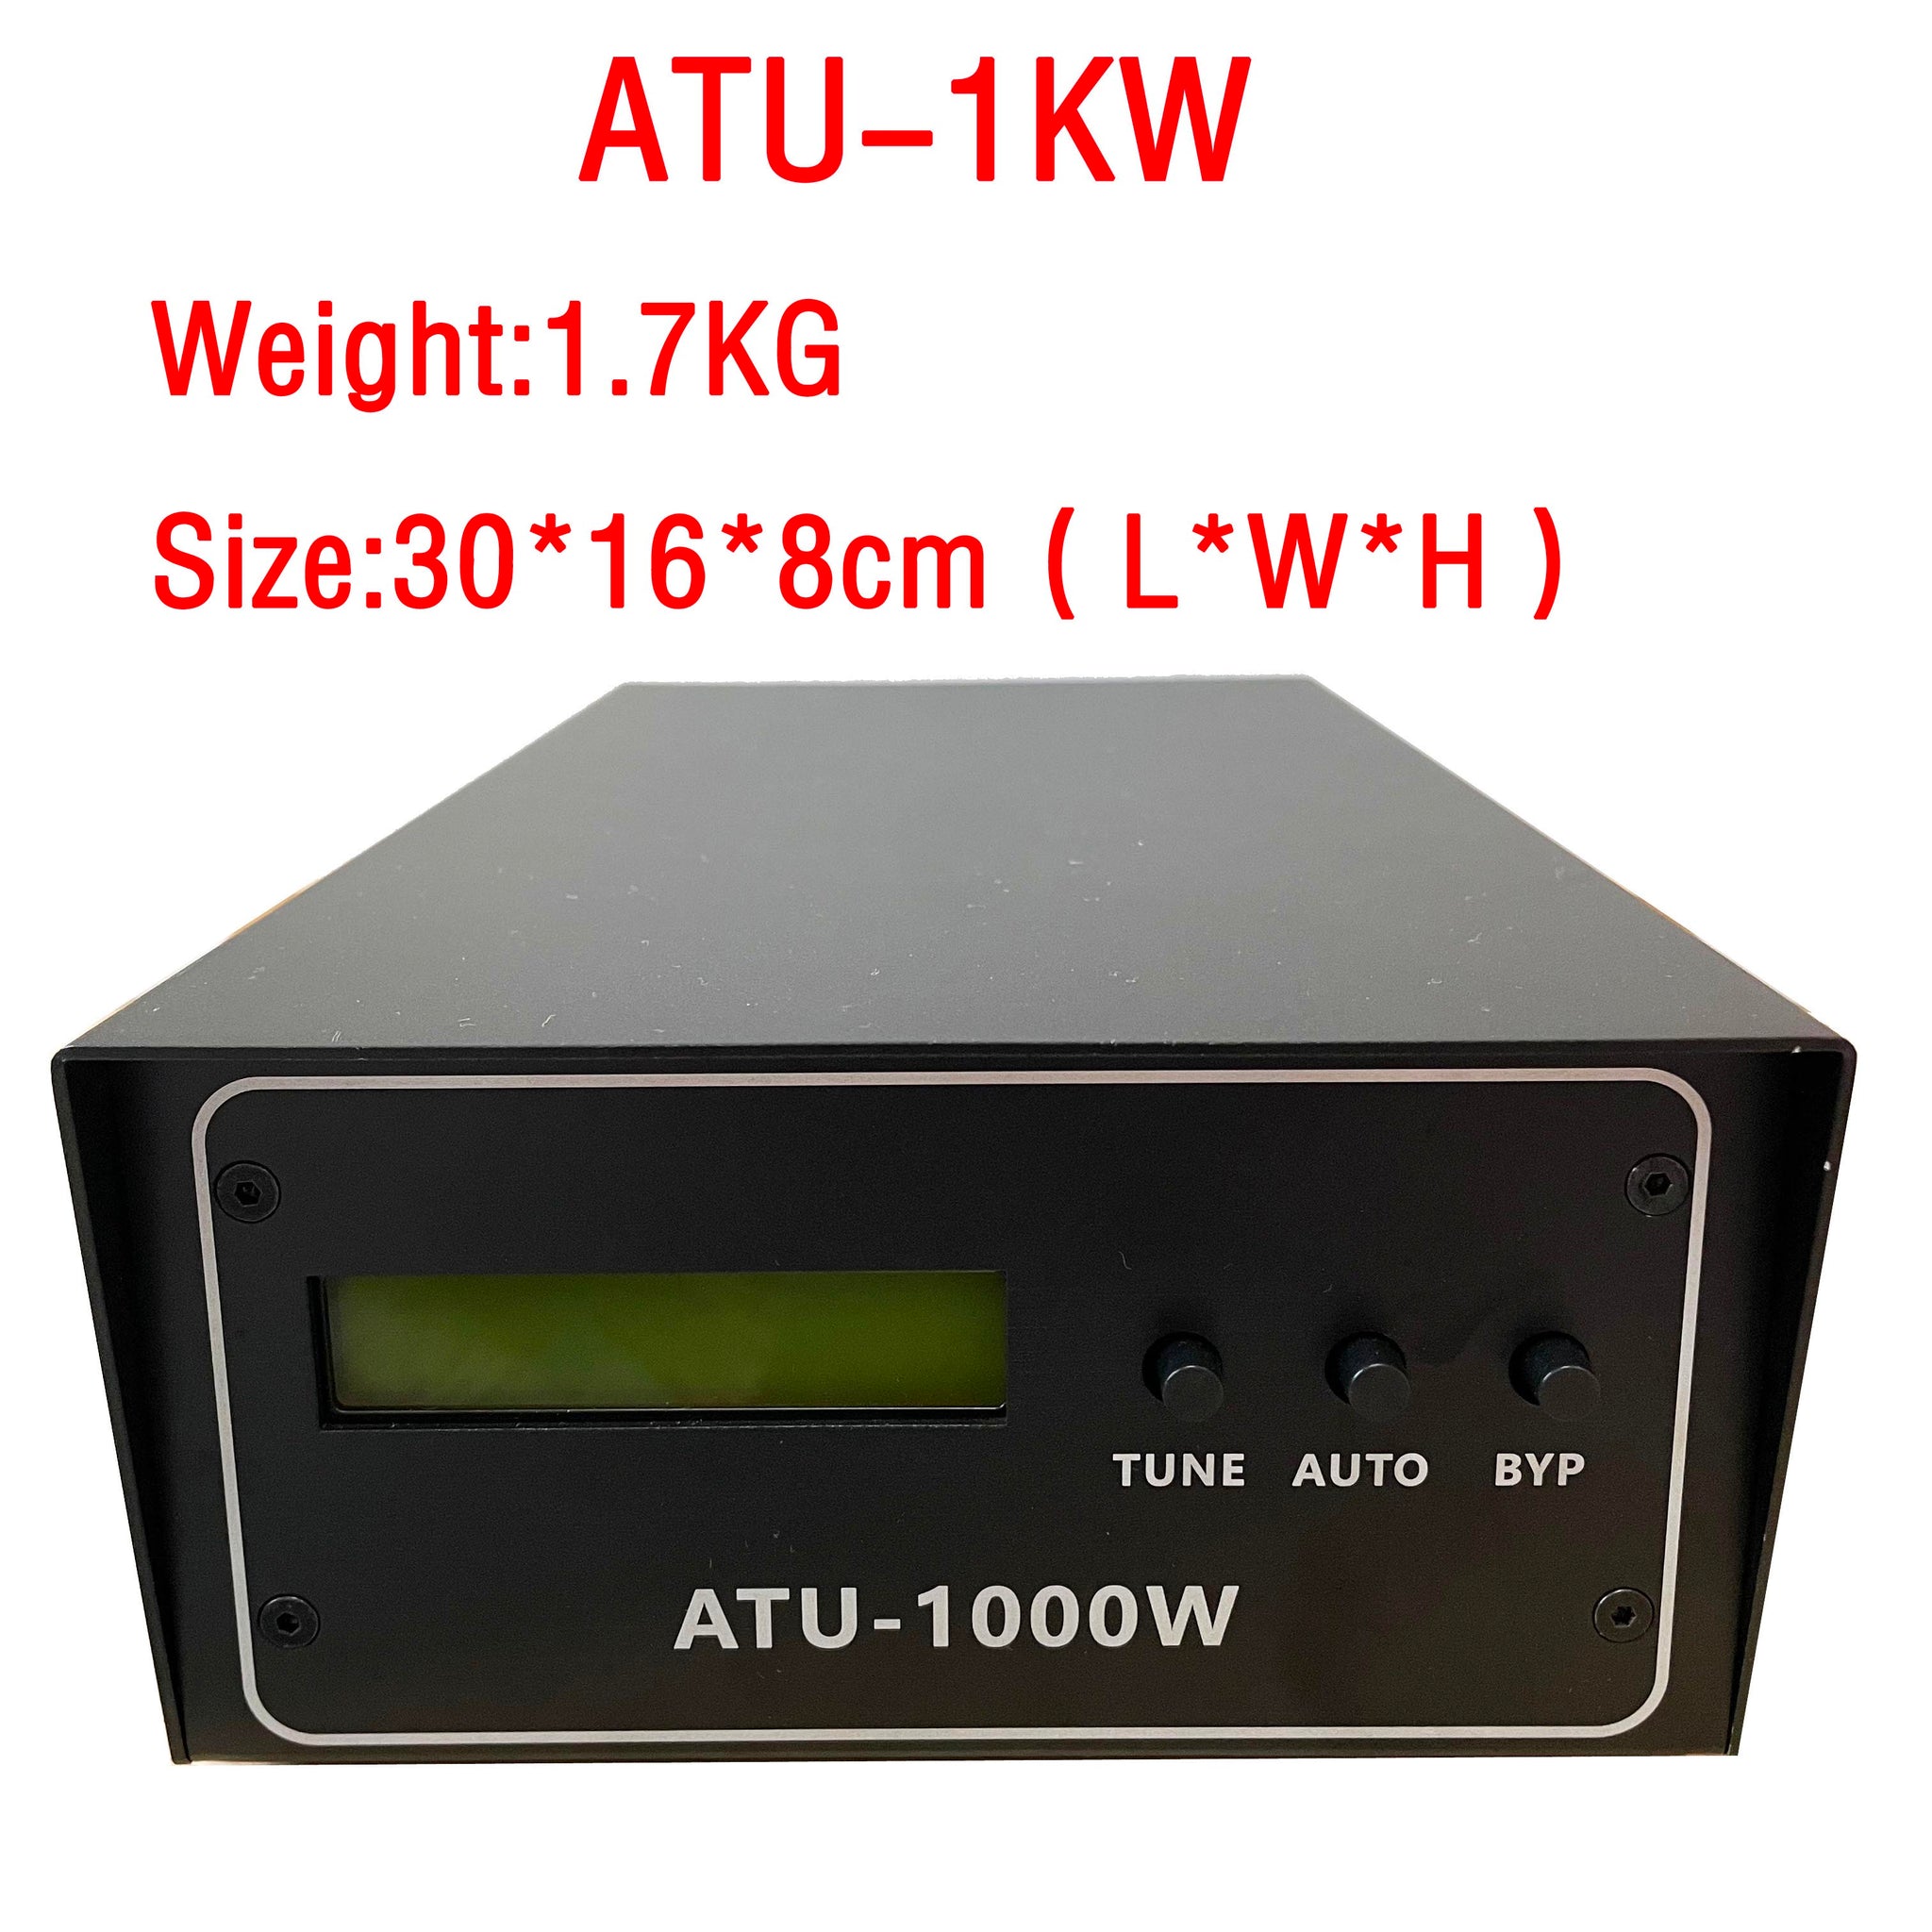 ATU-100 upgraded ATU-1000 ATU1000 ATU-1KW Automatic Antenna Tuner 7x7 (ATU-1000W by N7DDC) assemble with case